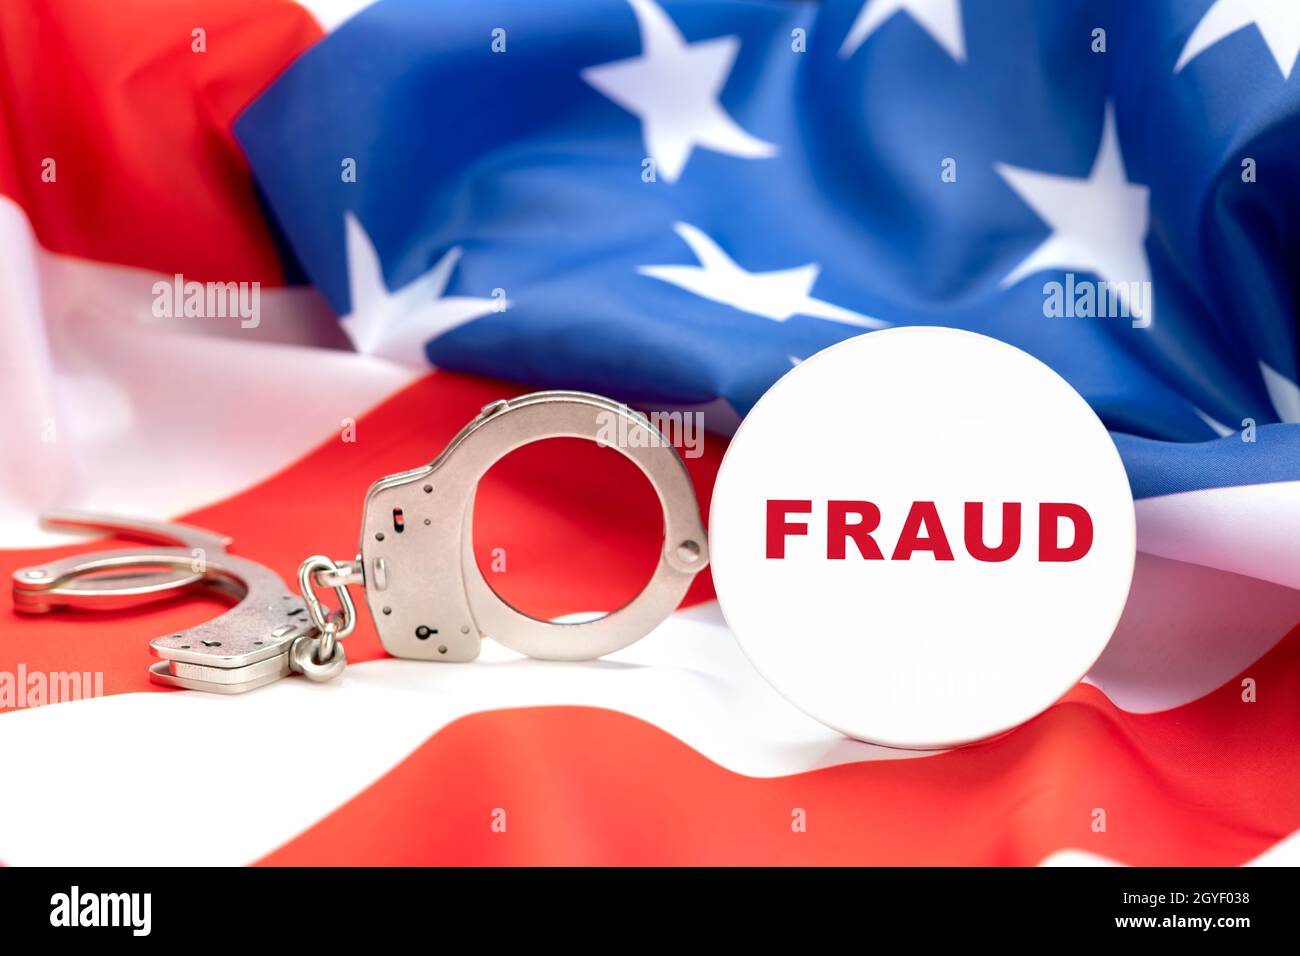 Las imágenes representan un botón de fraude contra las esposas y la bandera estadounidense, insinuando que el fraude es un delito y que las personas que engañan serán arrestadas. Foto de stock